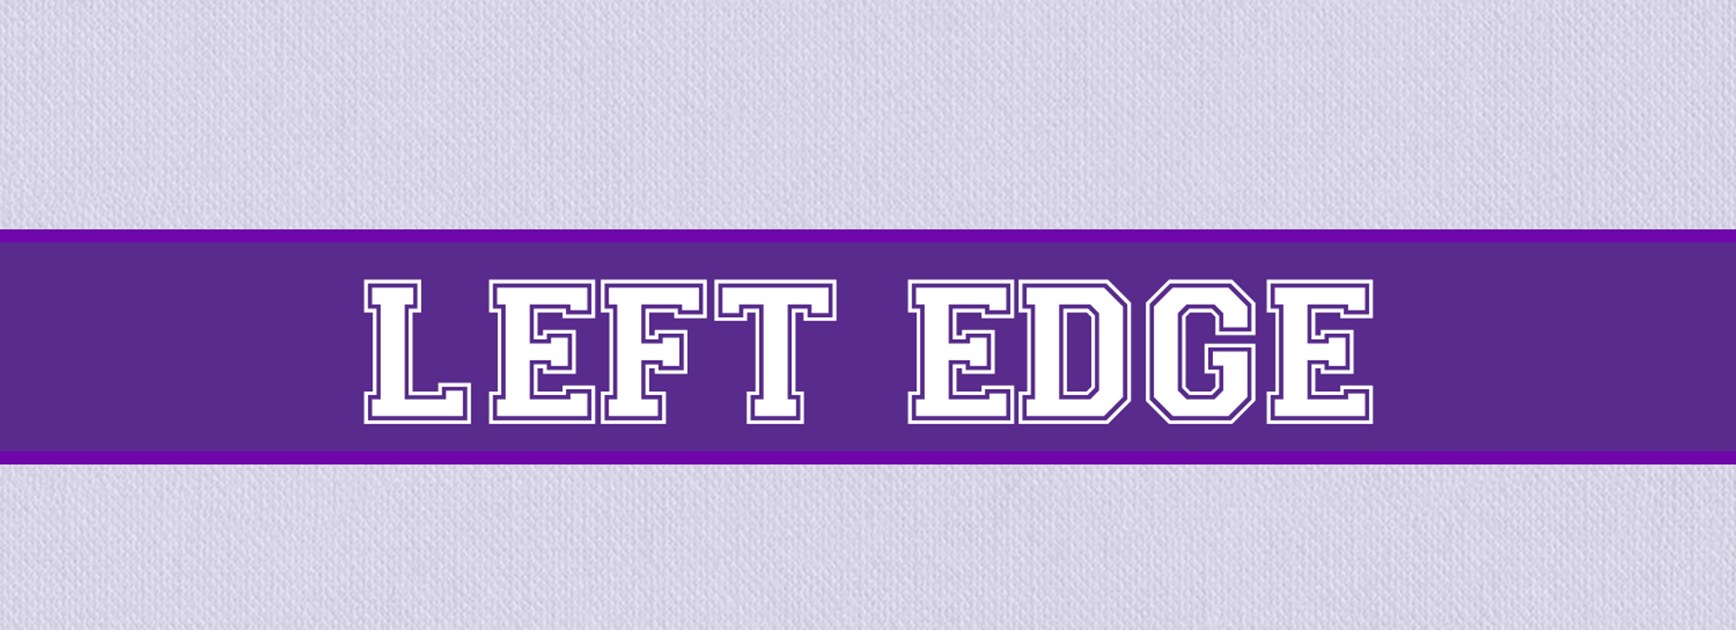 Yearbook 2021: Left edge